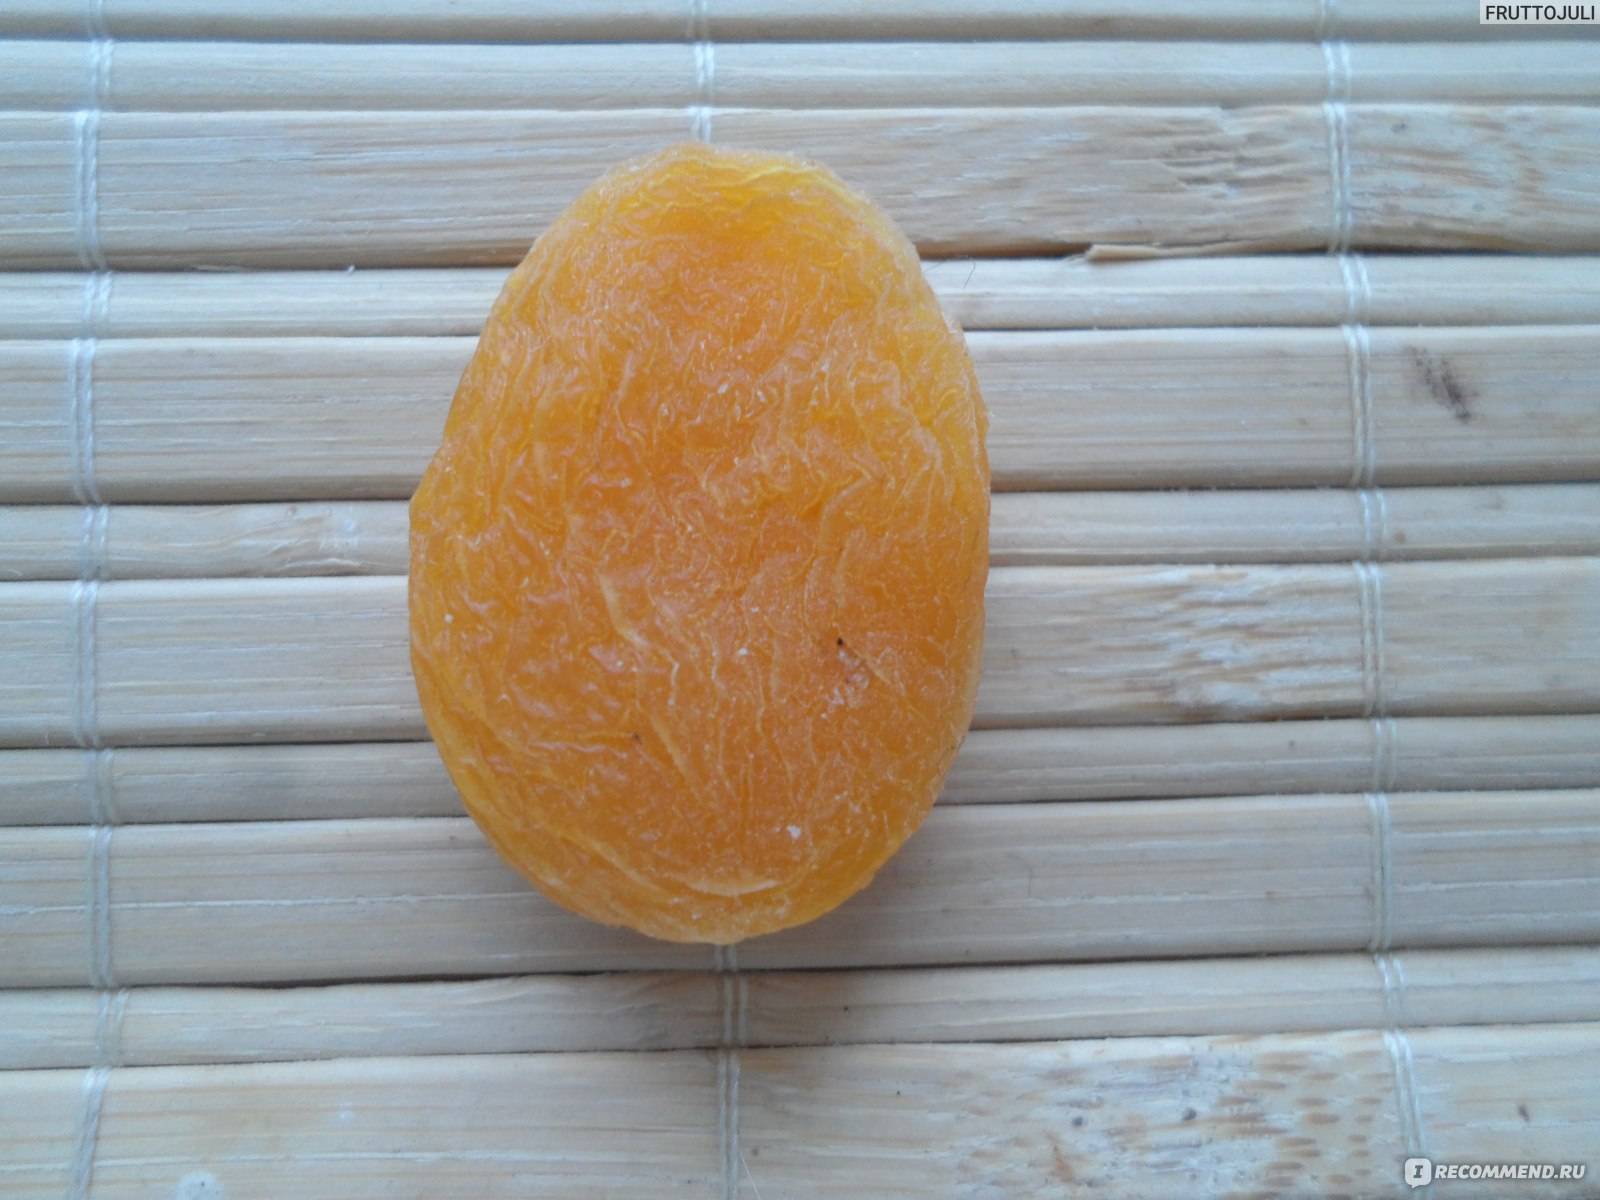 Сушеный абрикос - как засушить и где применять полезный сухофрукт (120 фото и видео)